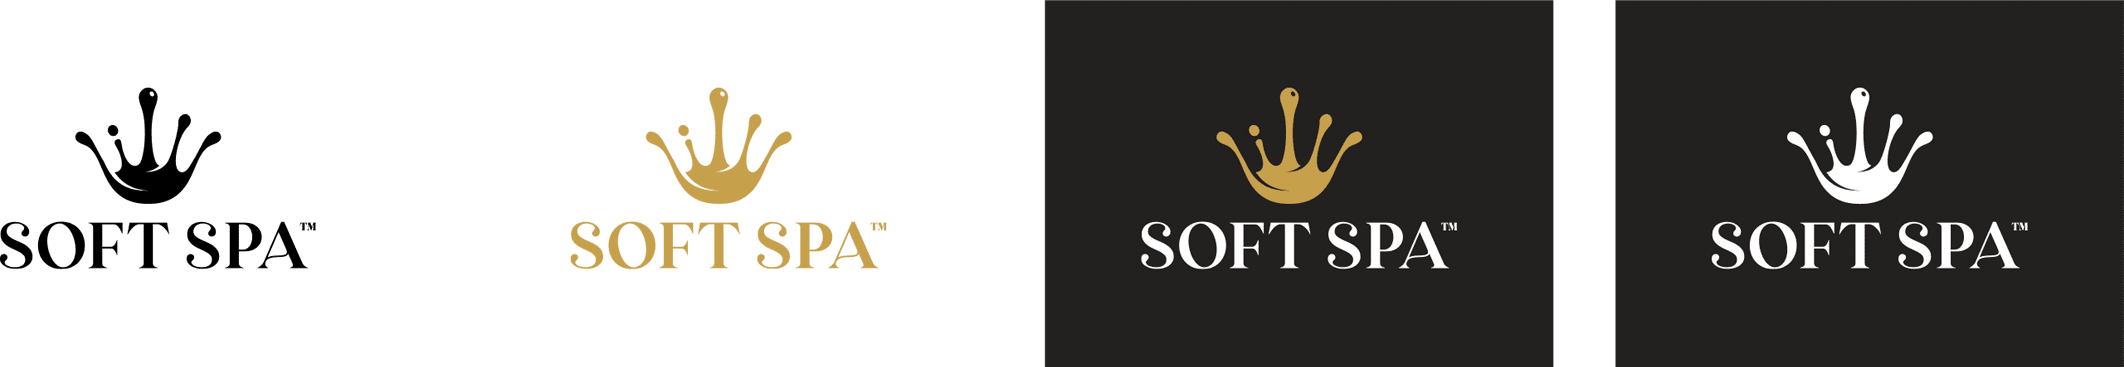 Soft Spa branding